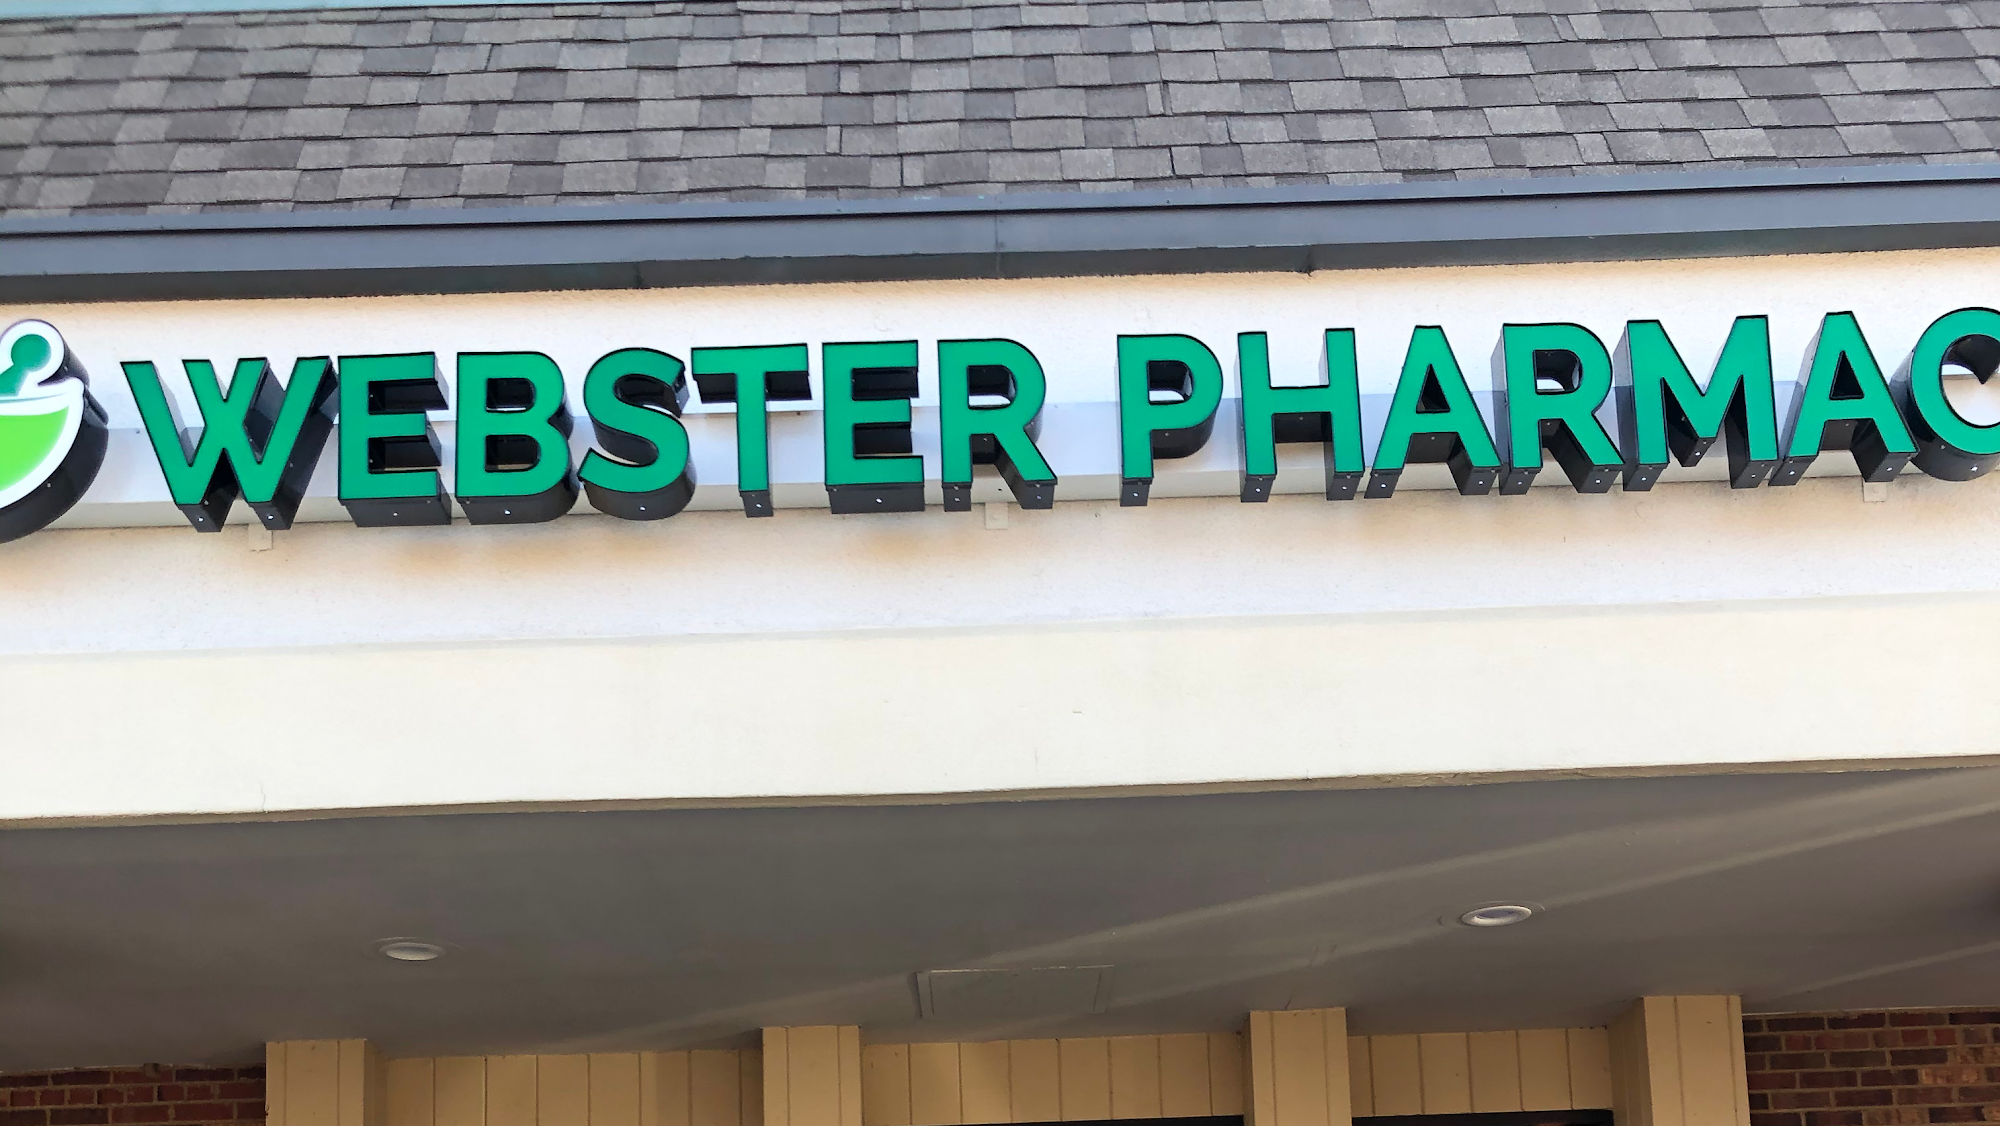 Webster Pharmacy